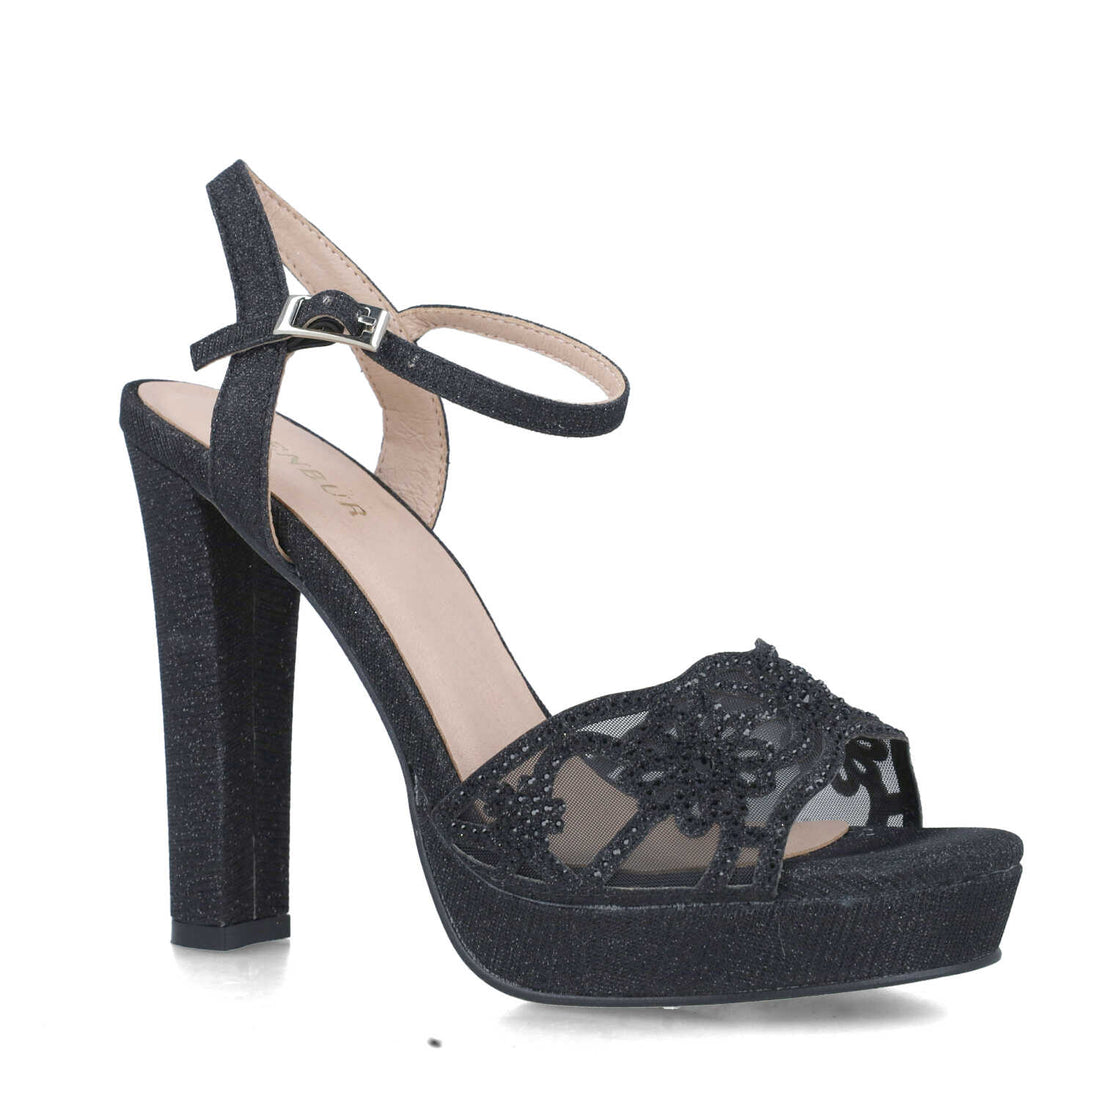 Black Platform Heeled Sandals With Ankle-Strap